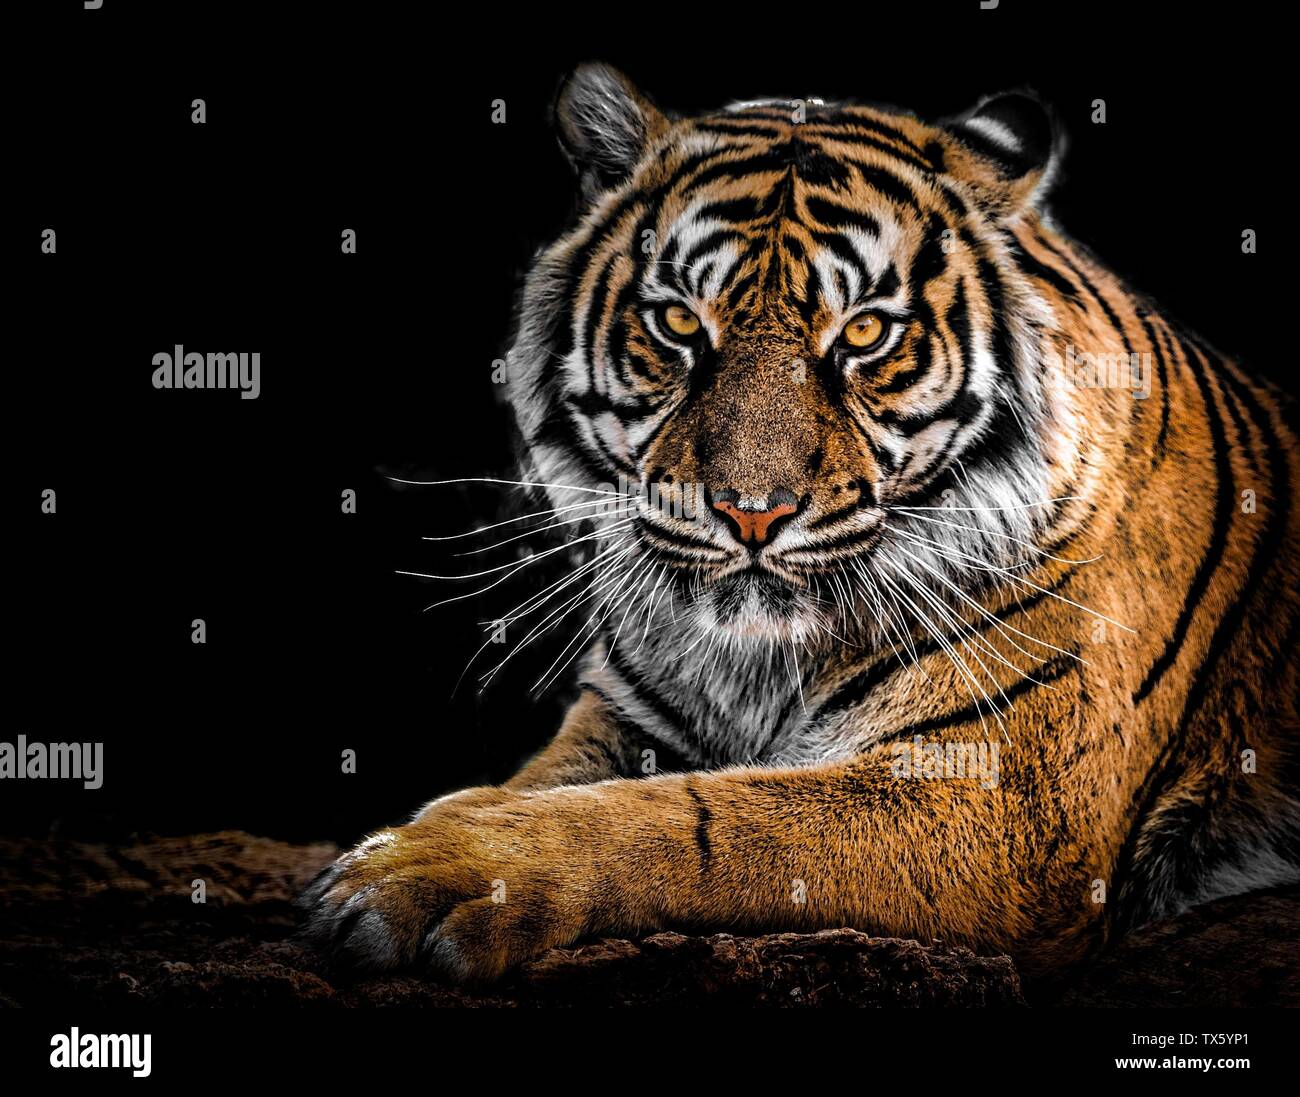 Photograph of The tiger (Panthera tigris) Stock Photo